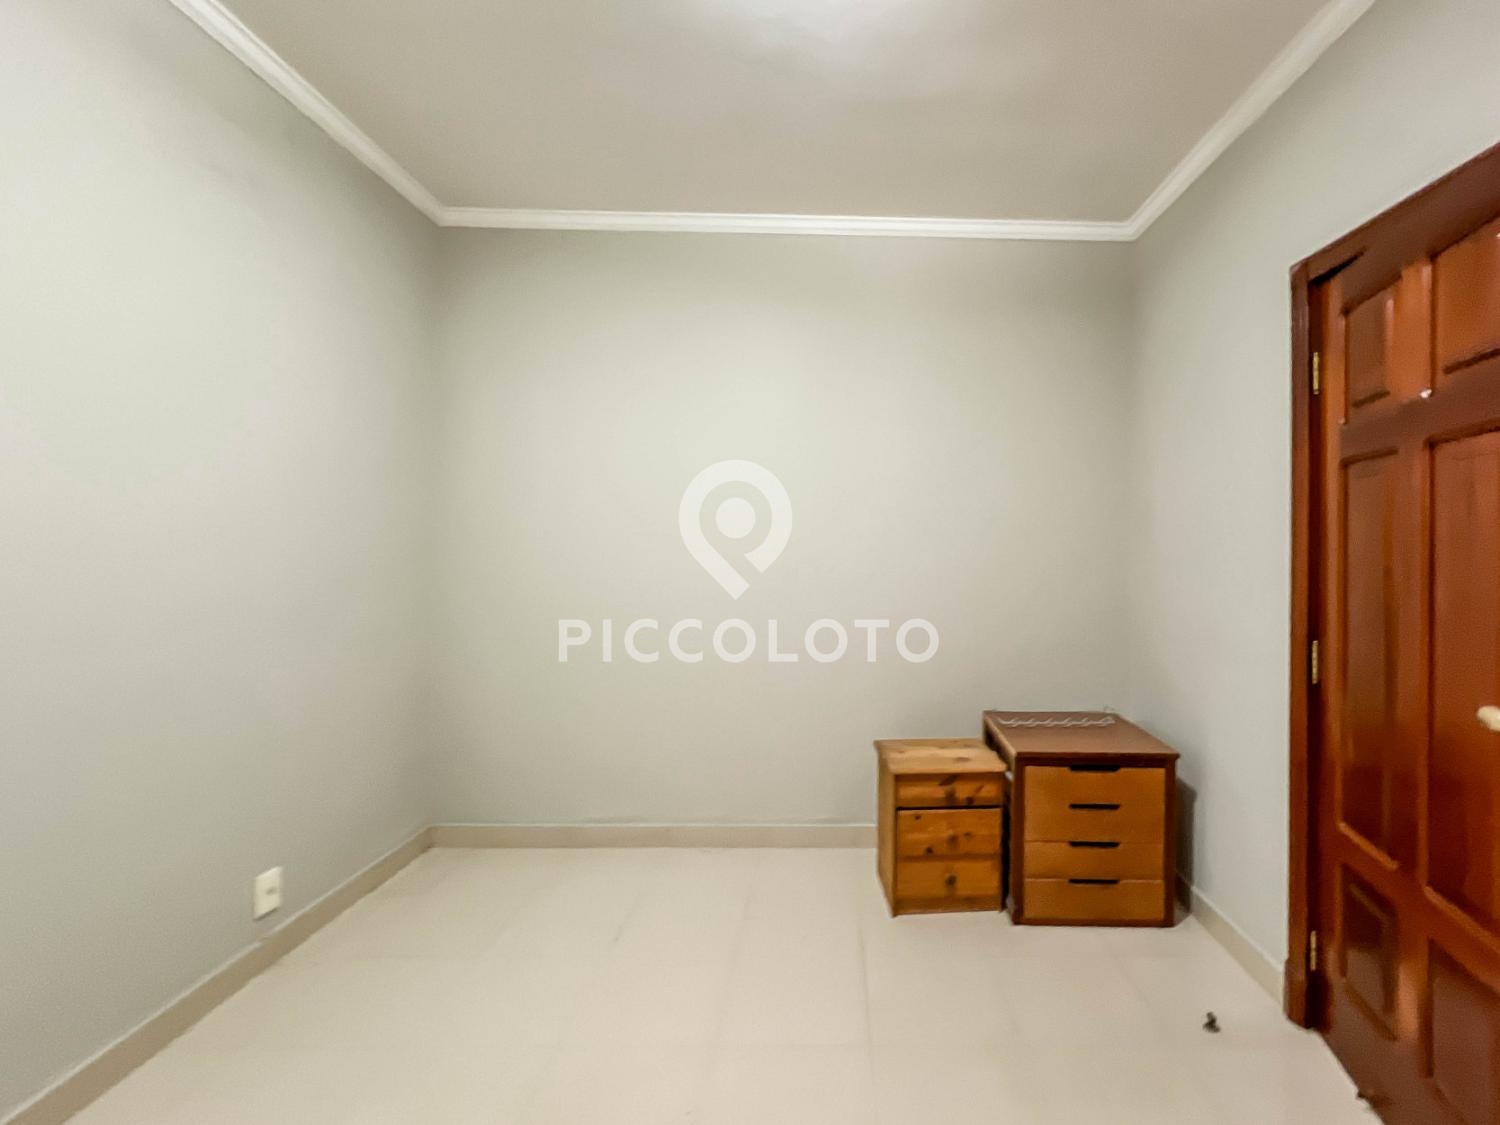 Piccoloto -Casa para alugar no Vila Embaré em Valinhos